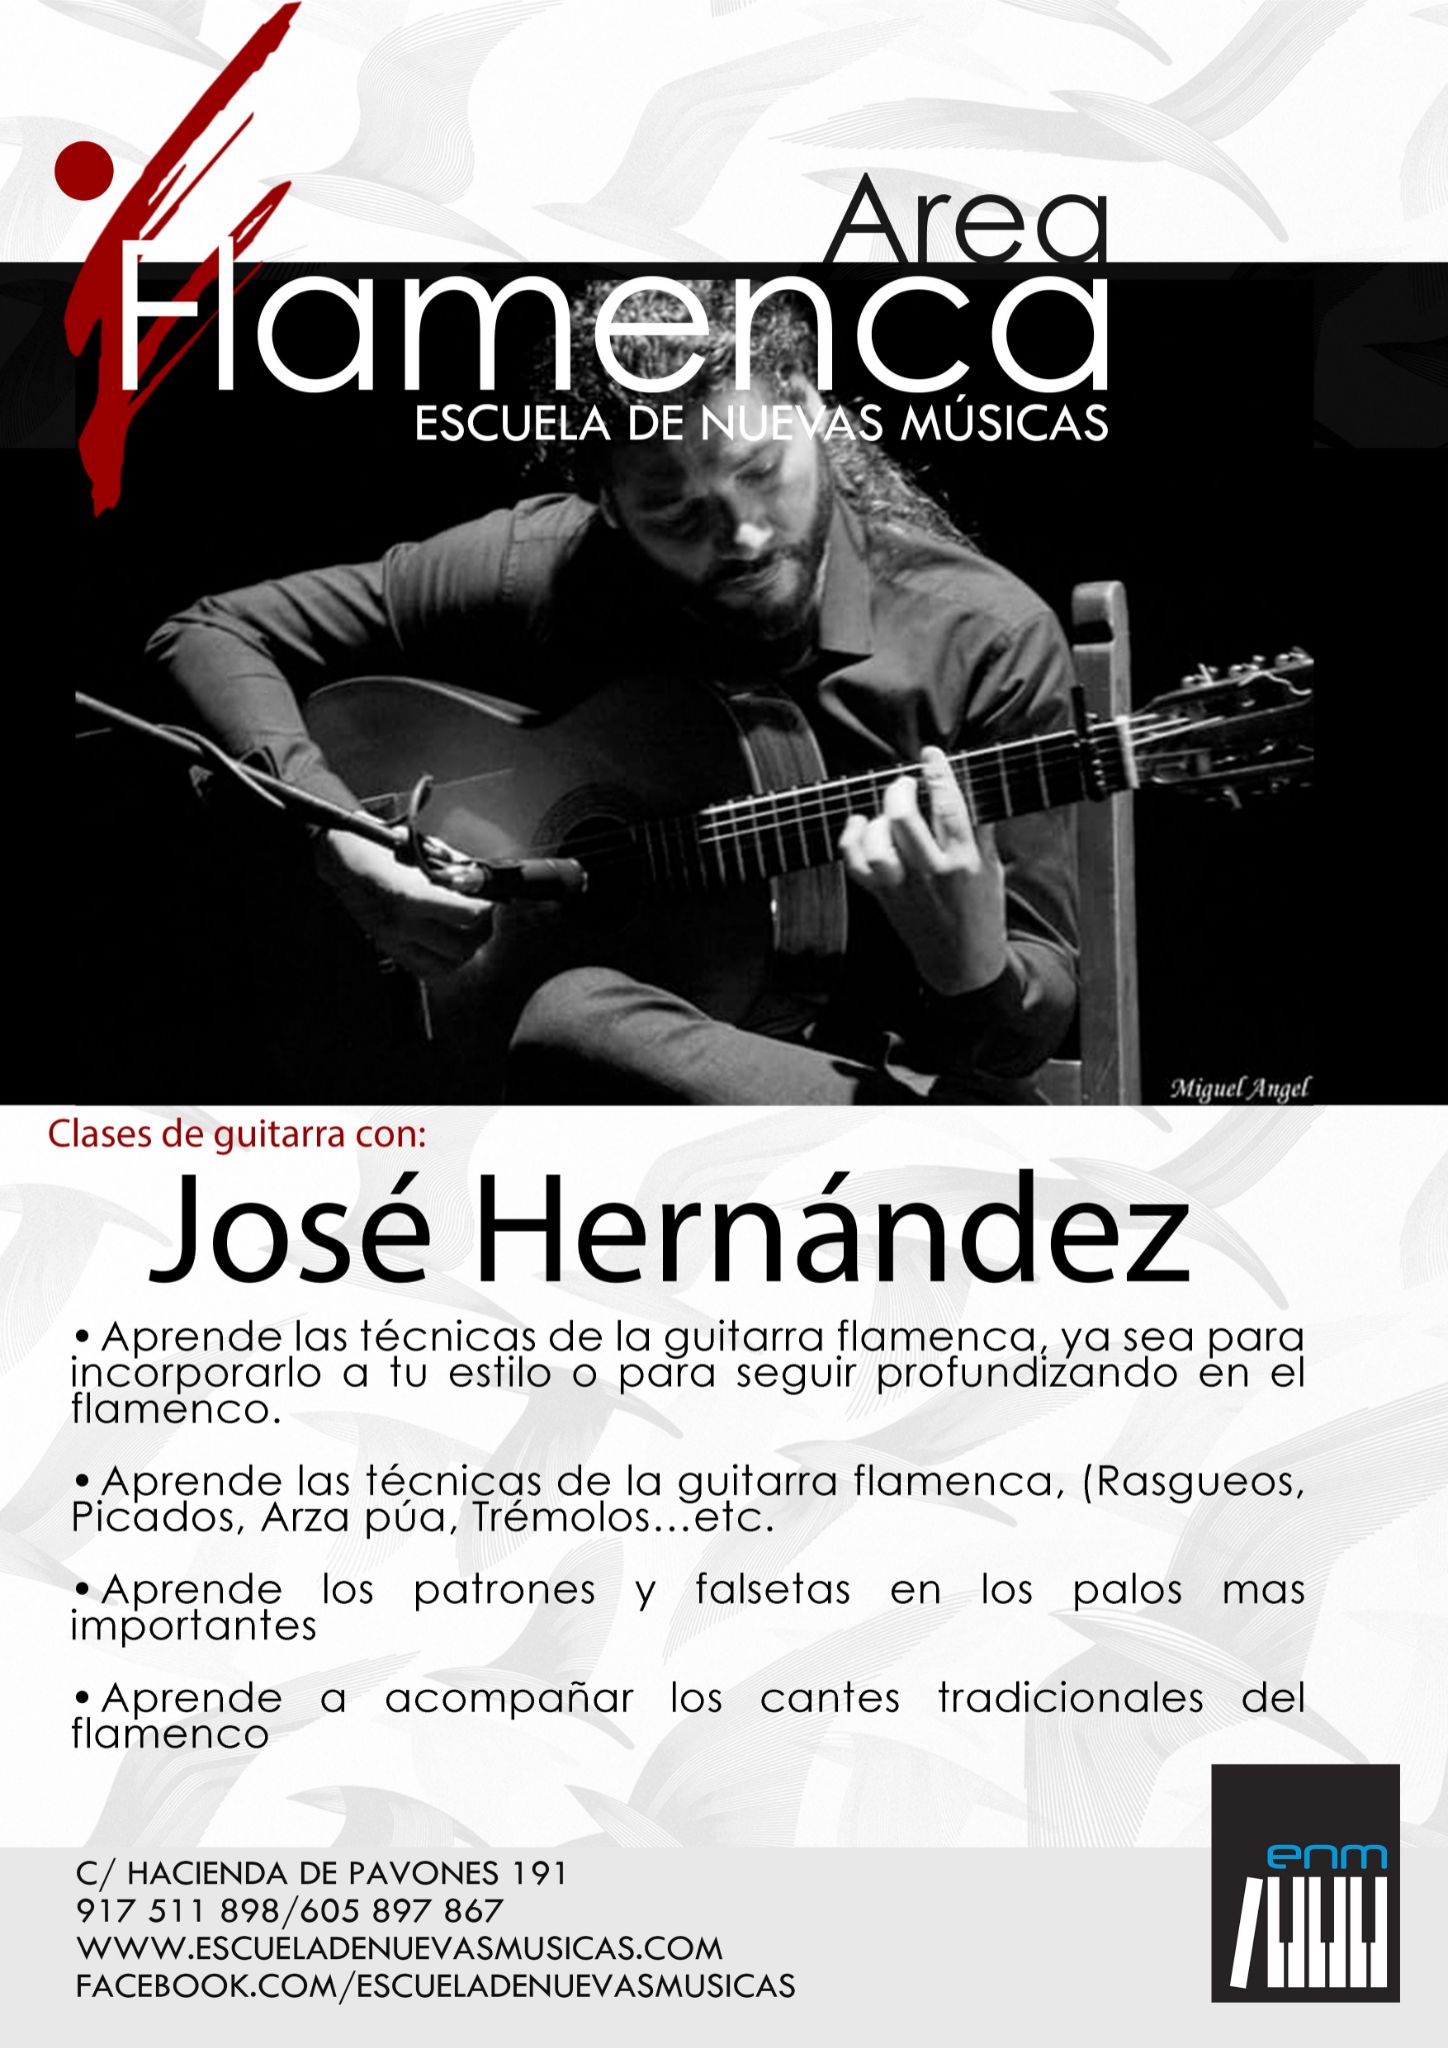 Clases de Guitarra con José Hernández - Escuela de Nuevas Músicas